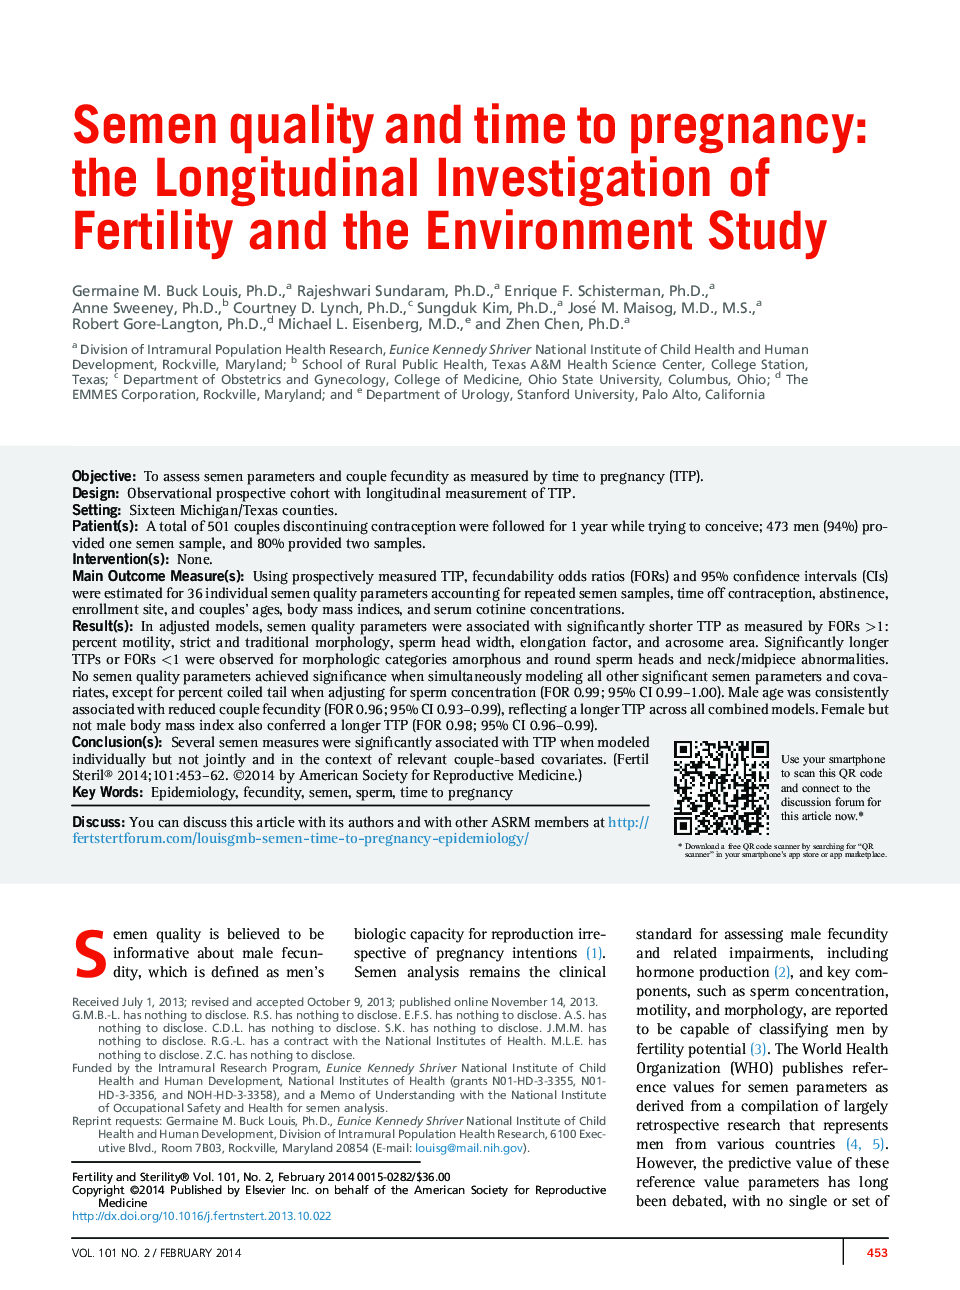 کیفیت و مدت زمان بارداری اسپرم: بررسی طولی باروری و مطالعه محیط زیست 